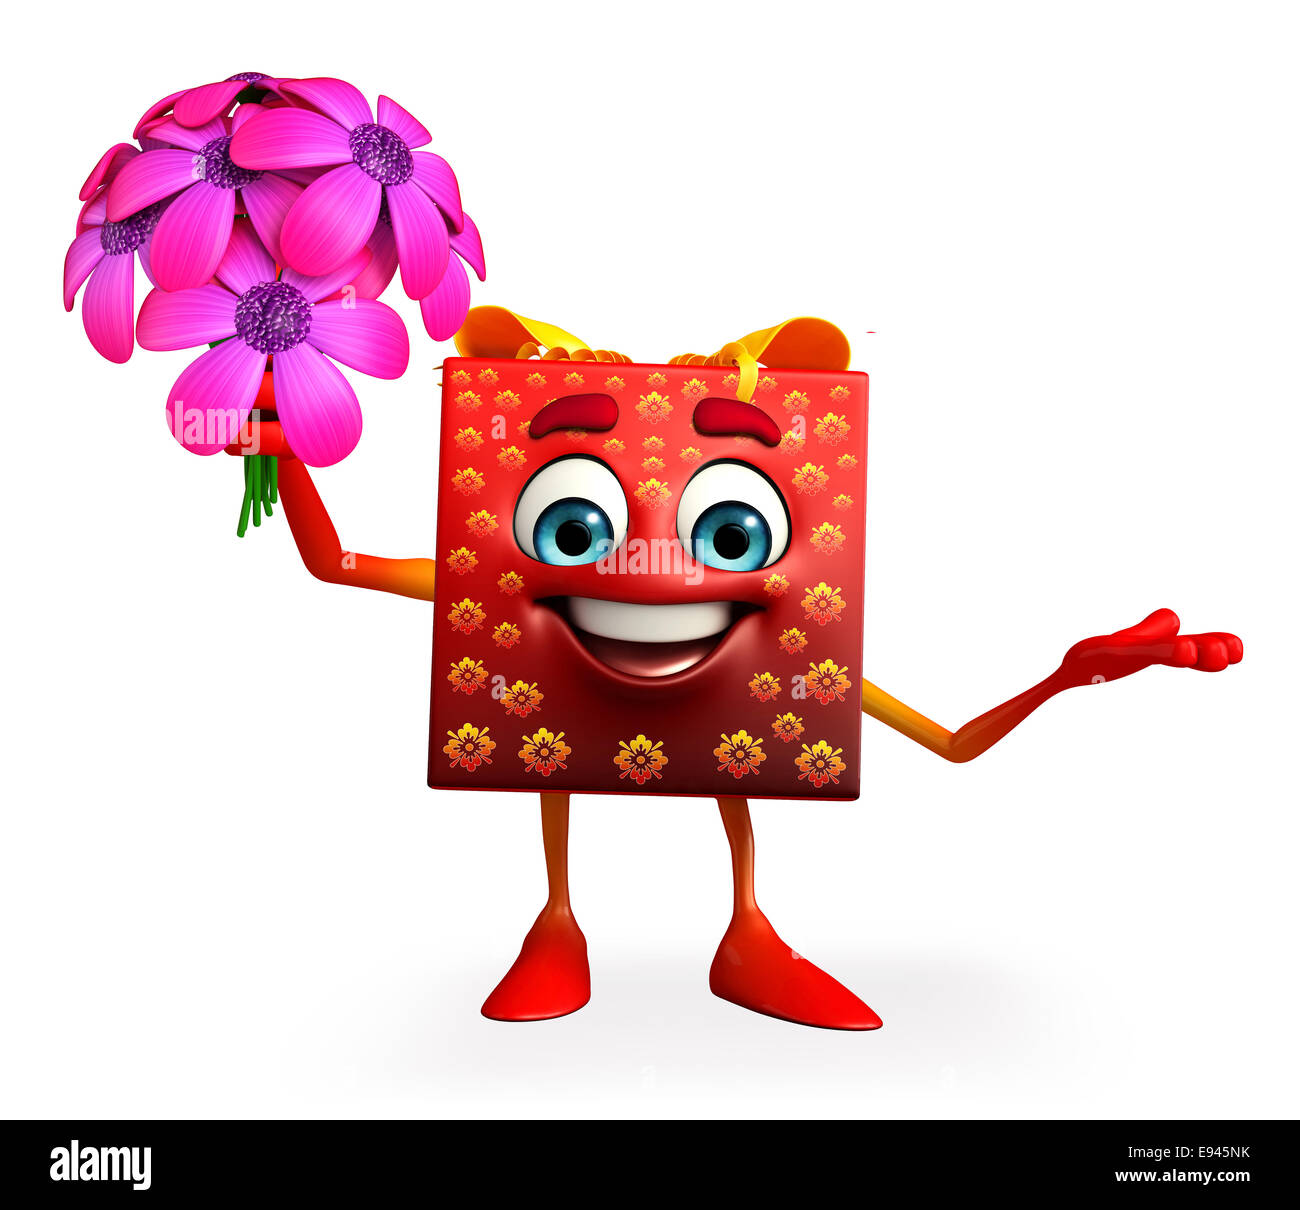 Cartoni animati della confezione regalo con fiori Foto stock - Alamy